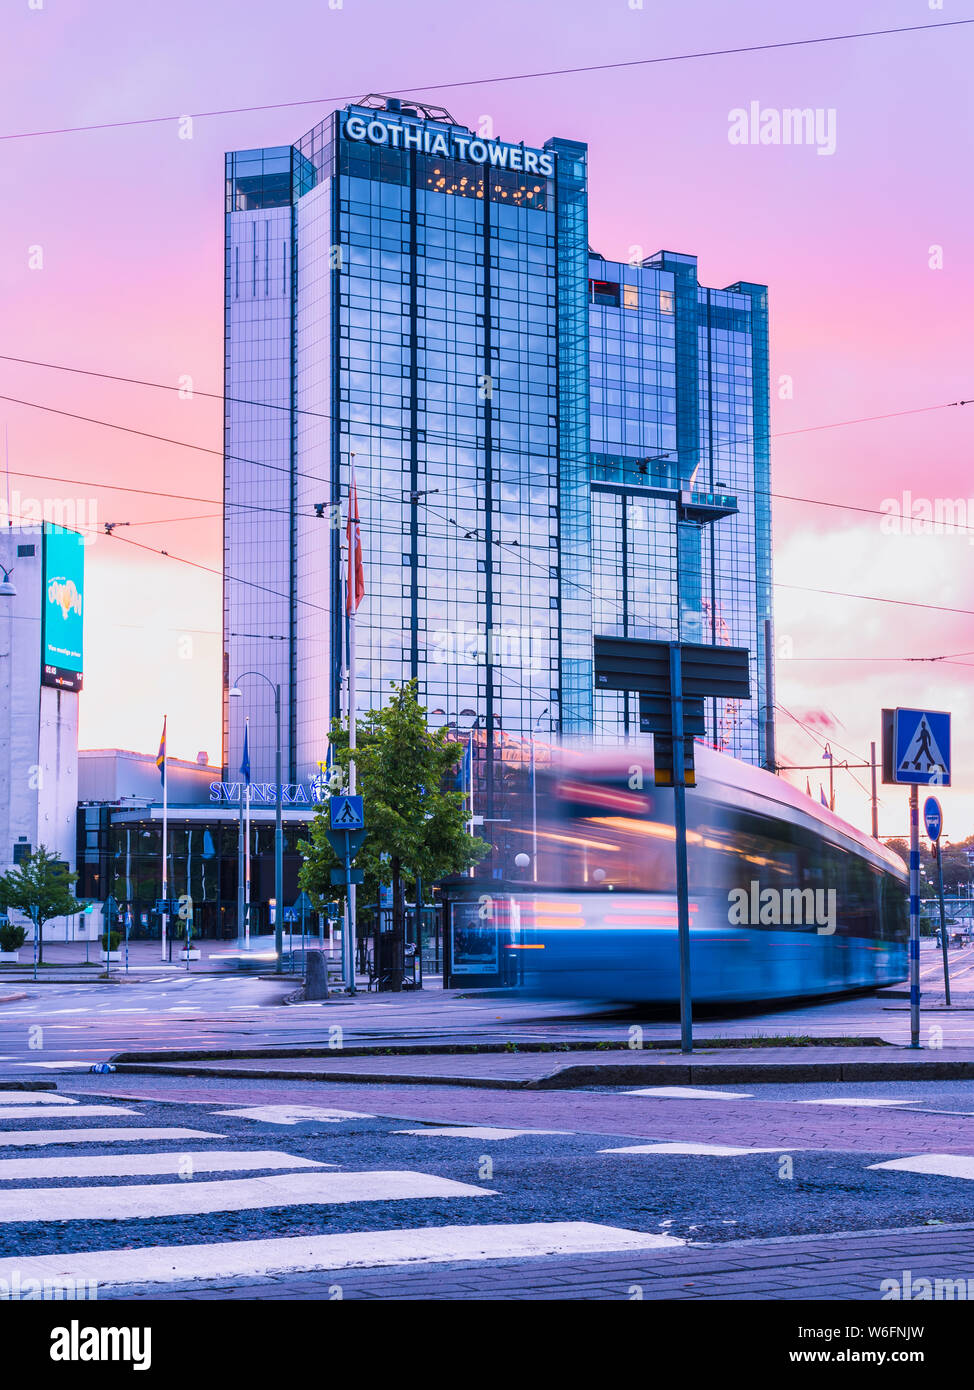 13/08-17, Göteborg, Schweden. Die erste Straßenbahn der Tag ist vorbei auf den normalerweise stark befahrenen Straße von korsvägen. Die violetten Himmel ist im Glas reflektiert. Stockfoto